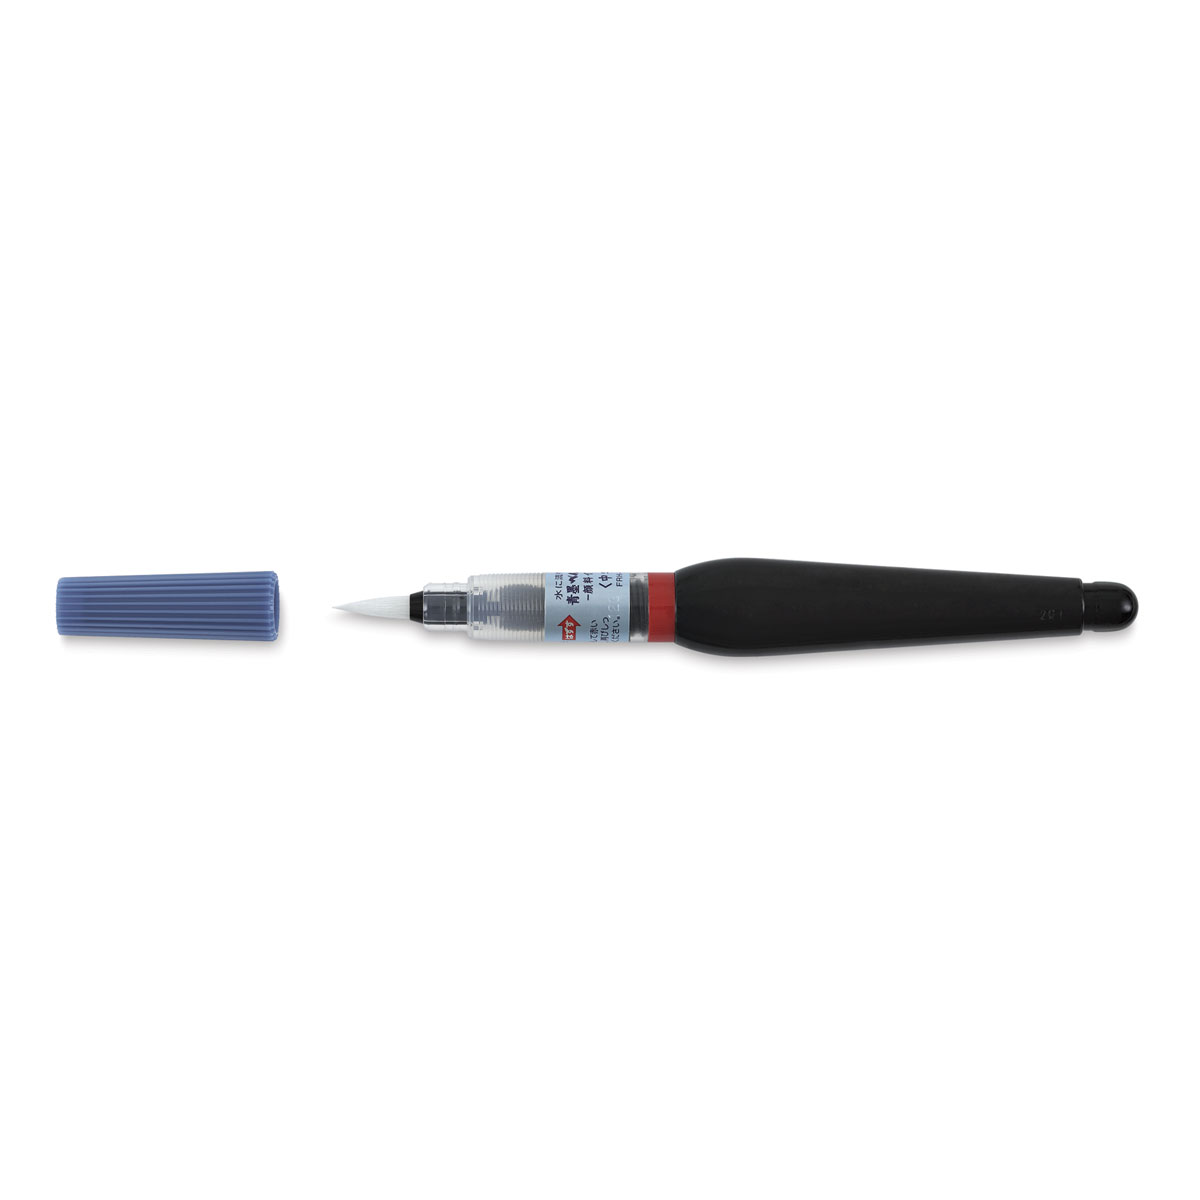 Pentel Pigment Ink Brush Pen - Medium